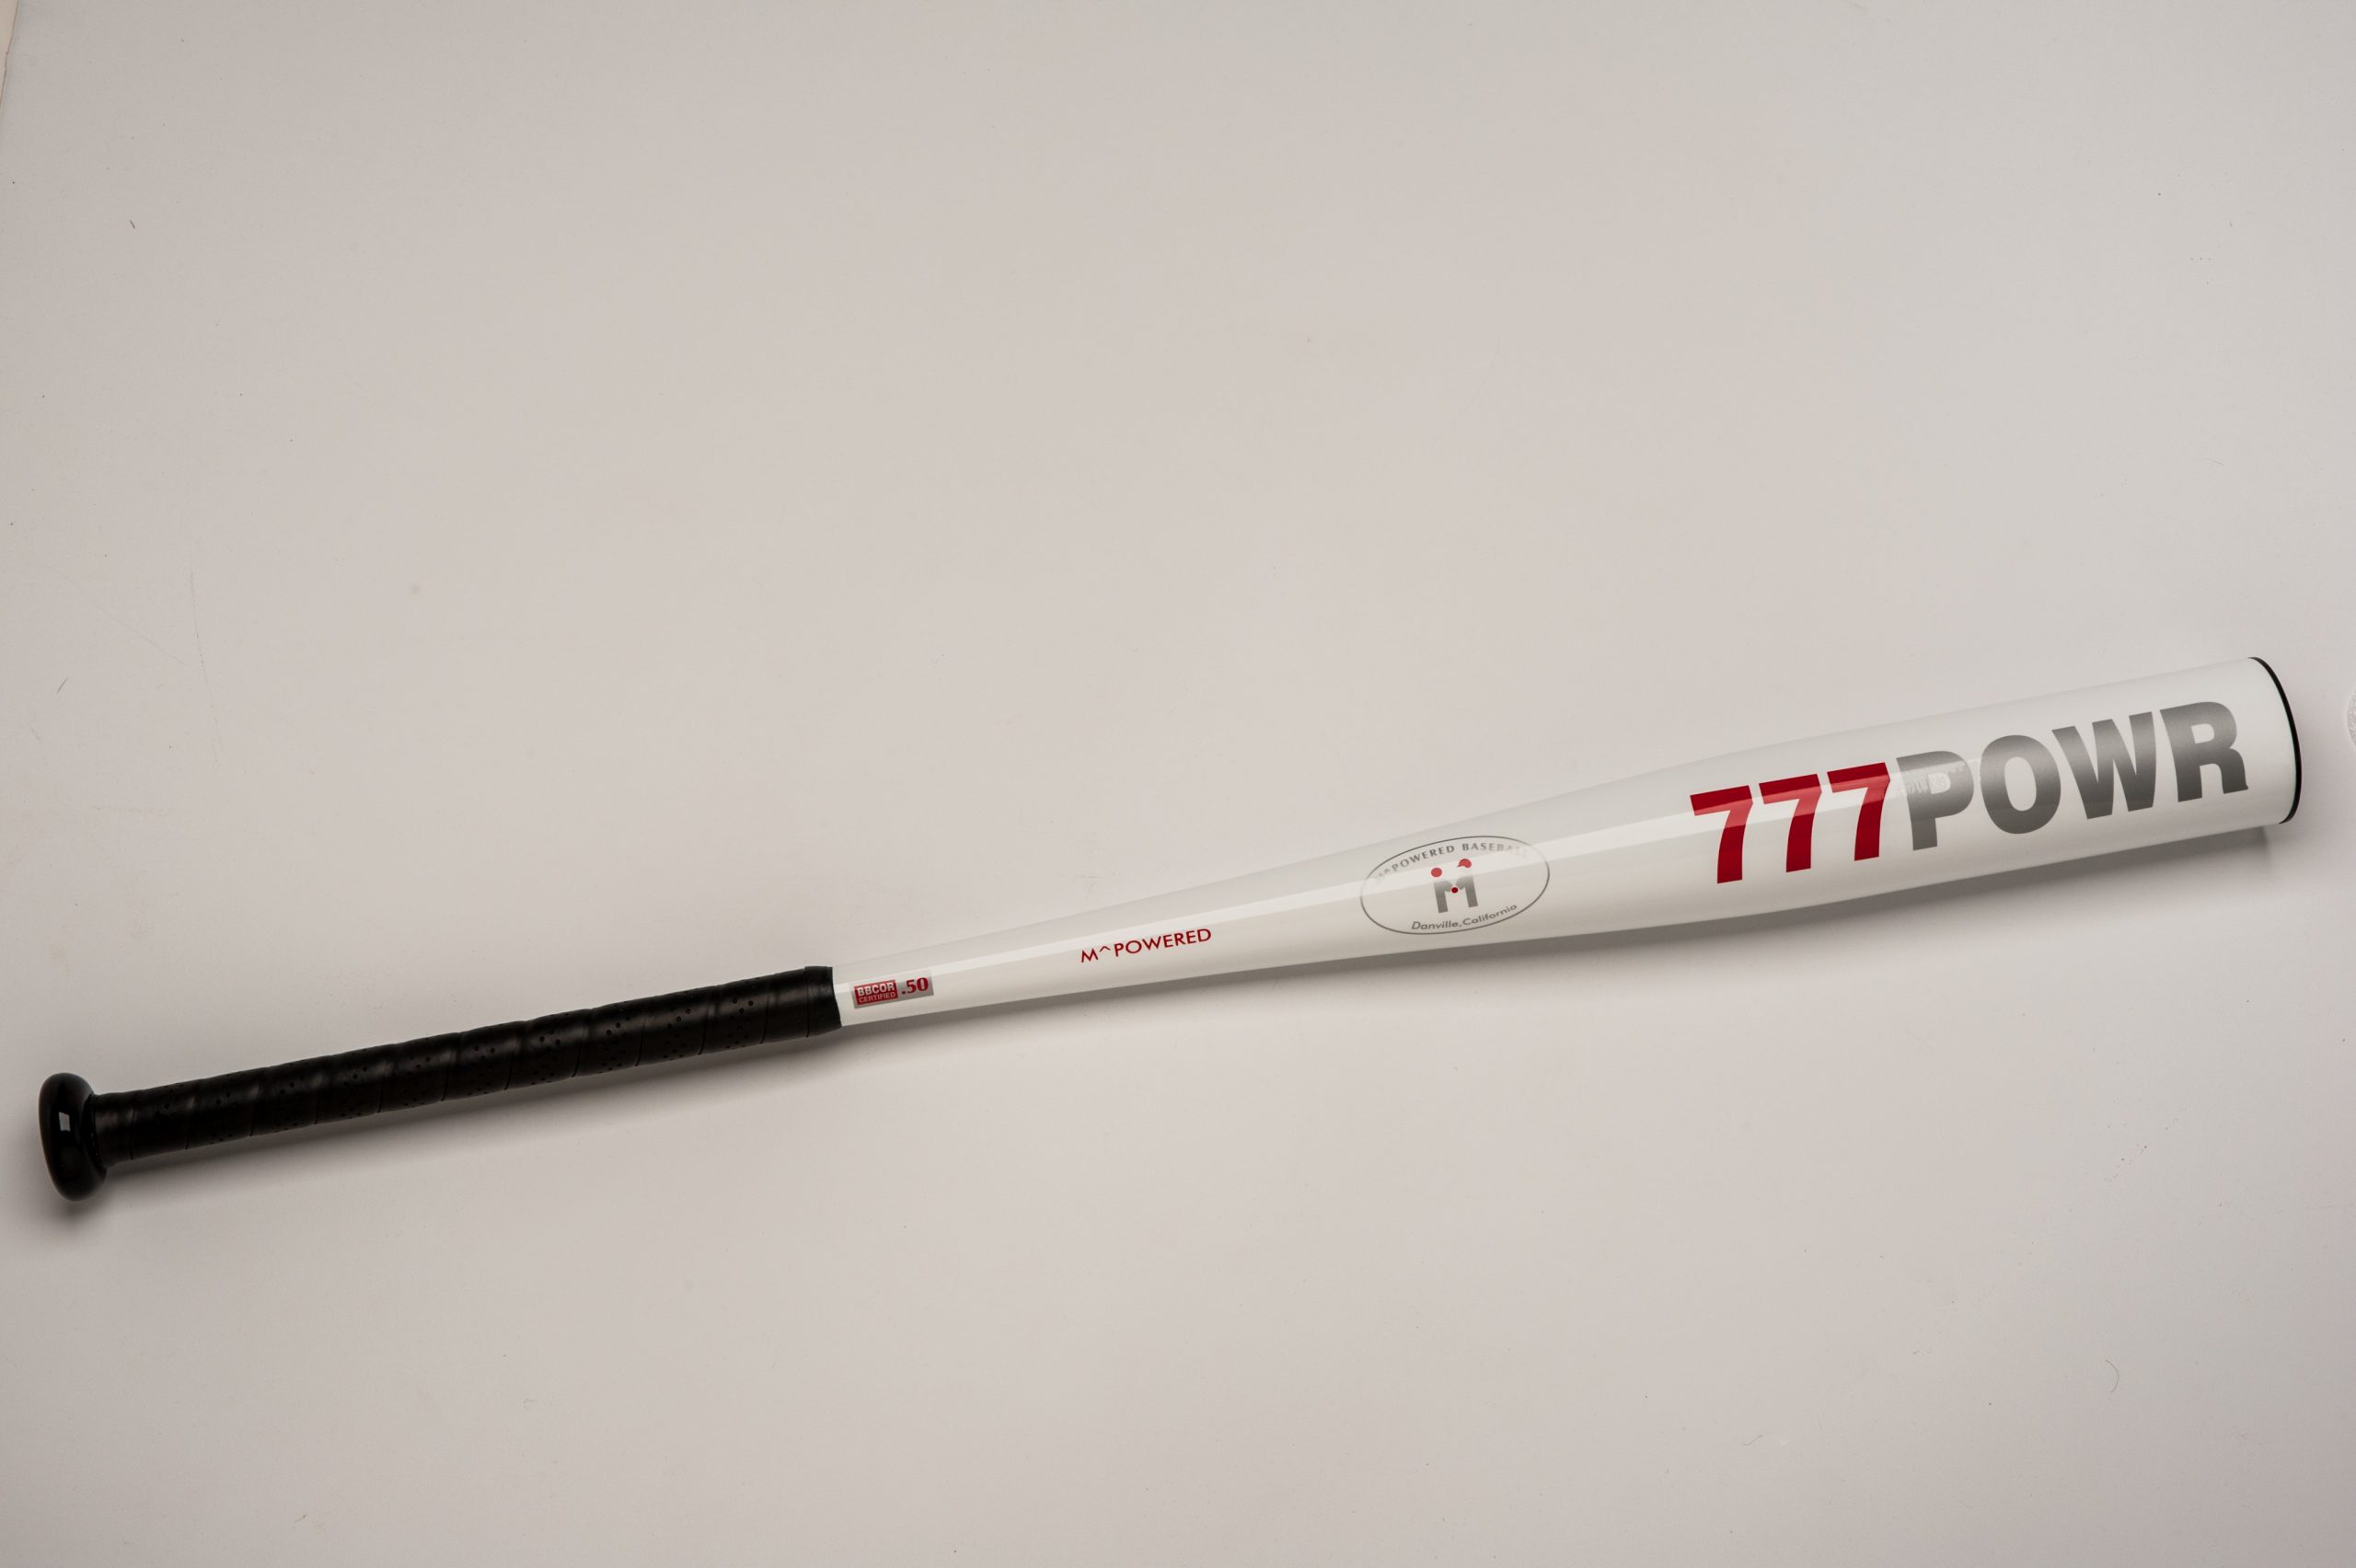 33-Inch Silver Mpowered Baseball 777POWR BBCOR Alloy Baseball Bat